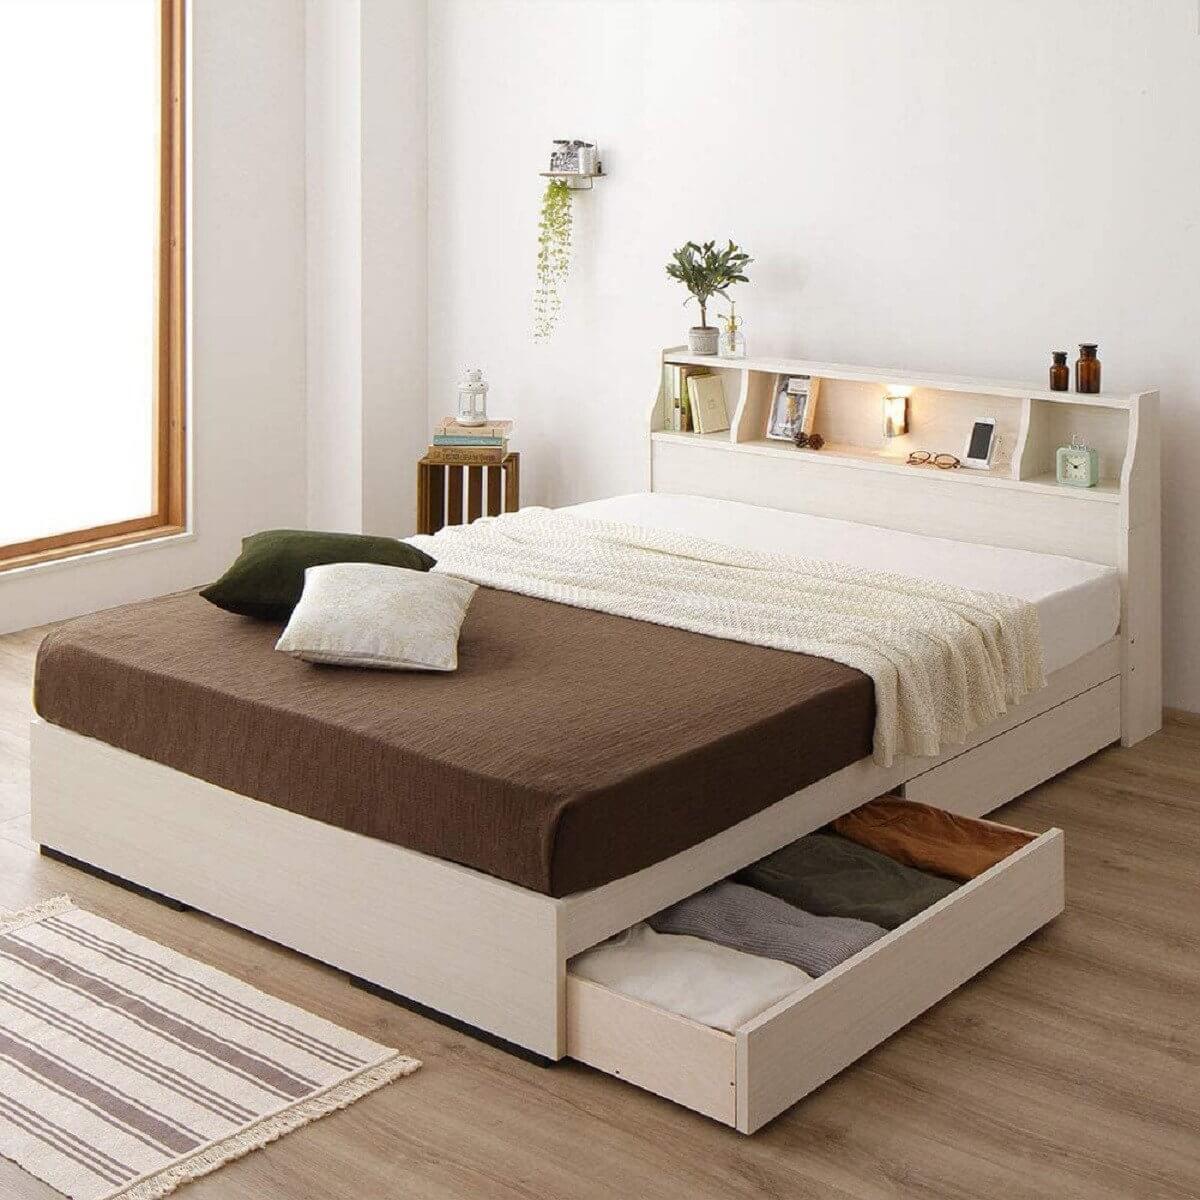 Giường ngủ 1m4 đang trở thành lựa chọn phổ biến cho các phòng ngủ có không gian nhỏ vào năm